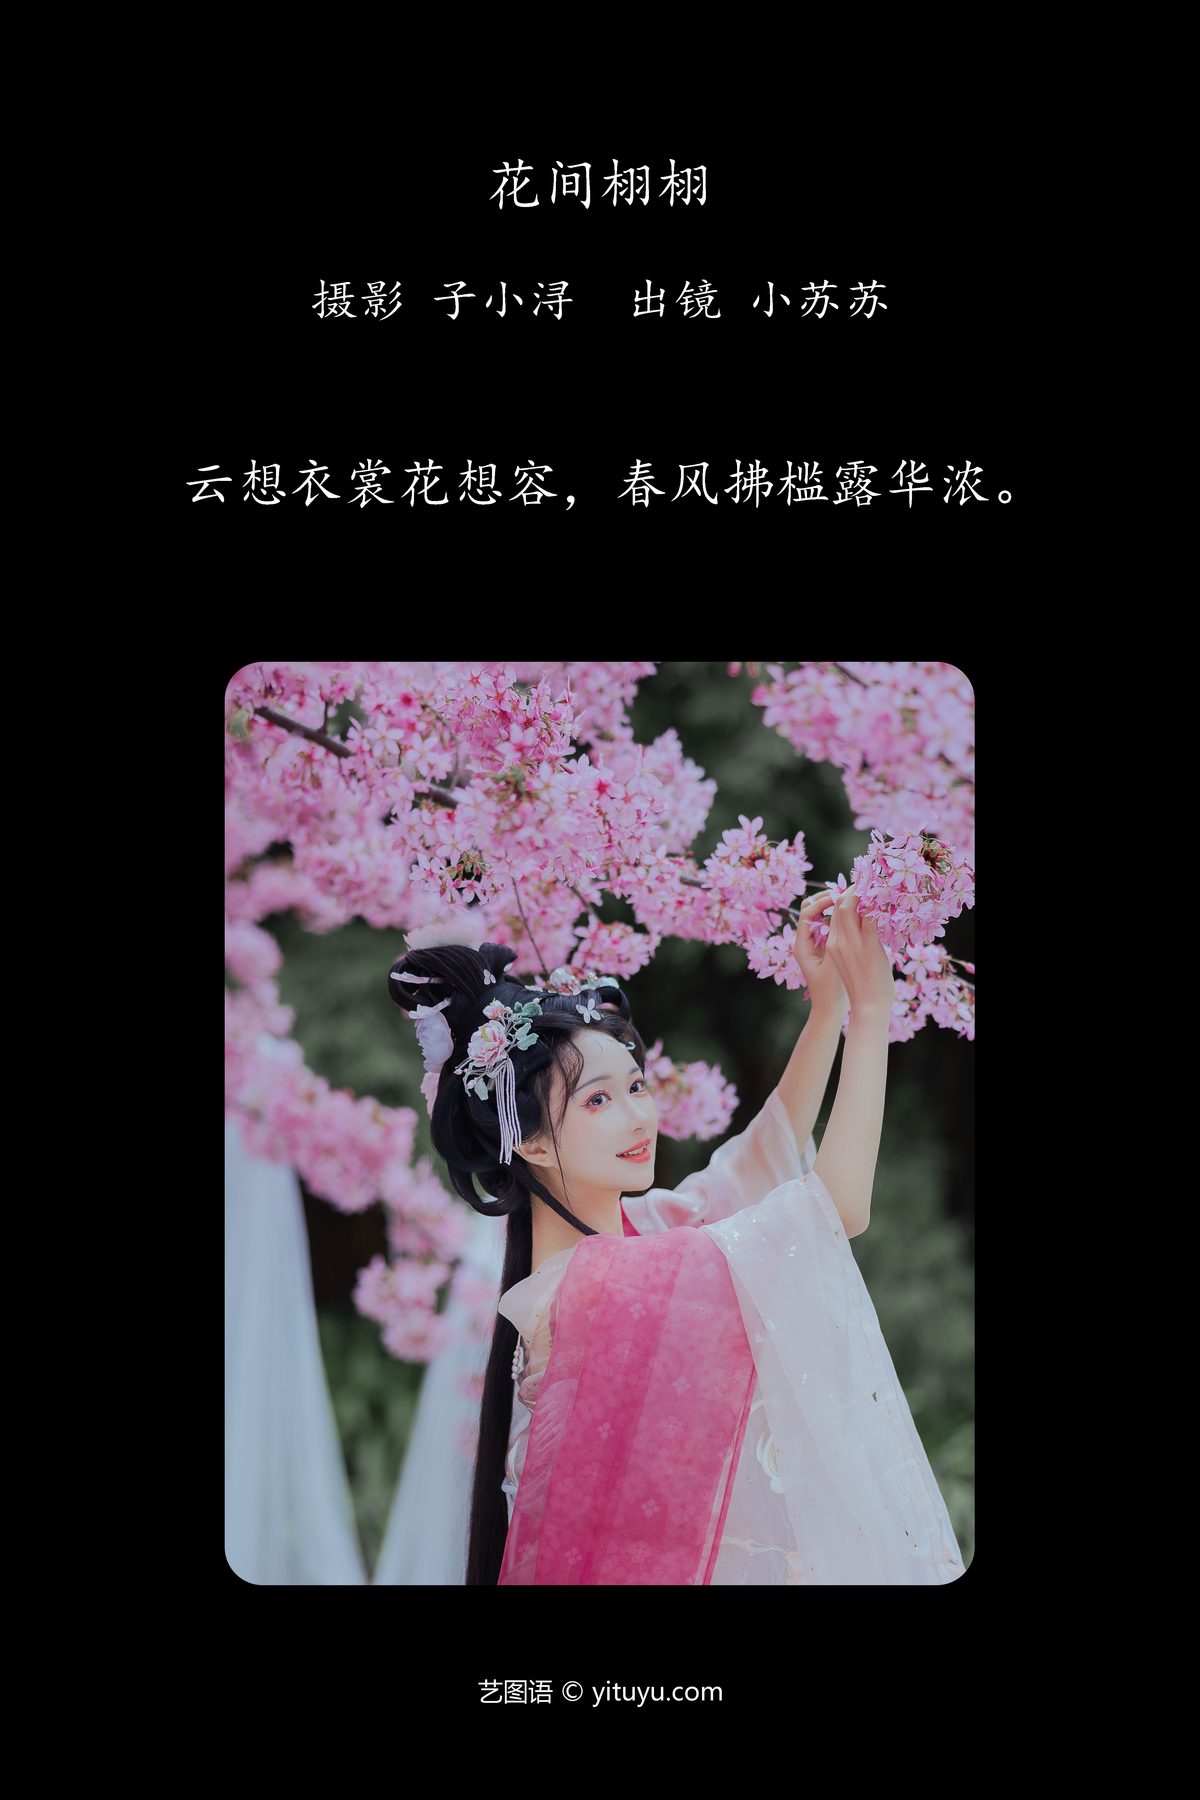 YiTuYu艺图语 Vol 4190 Qi Luo Sheng De Xiao Su Su 0001 9761951663.jpg